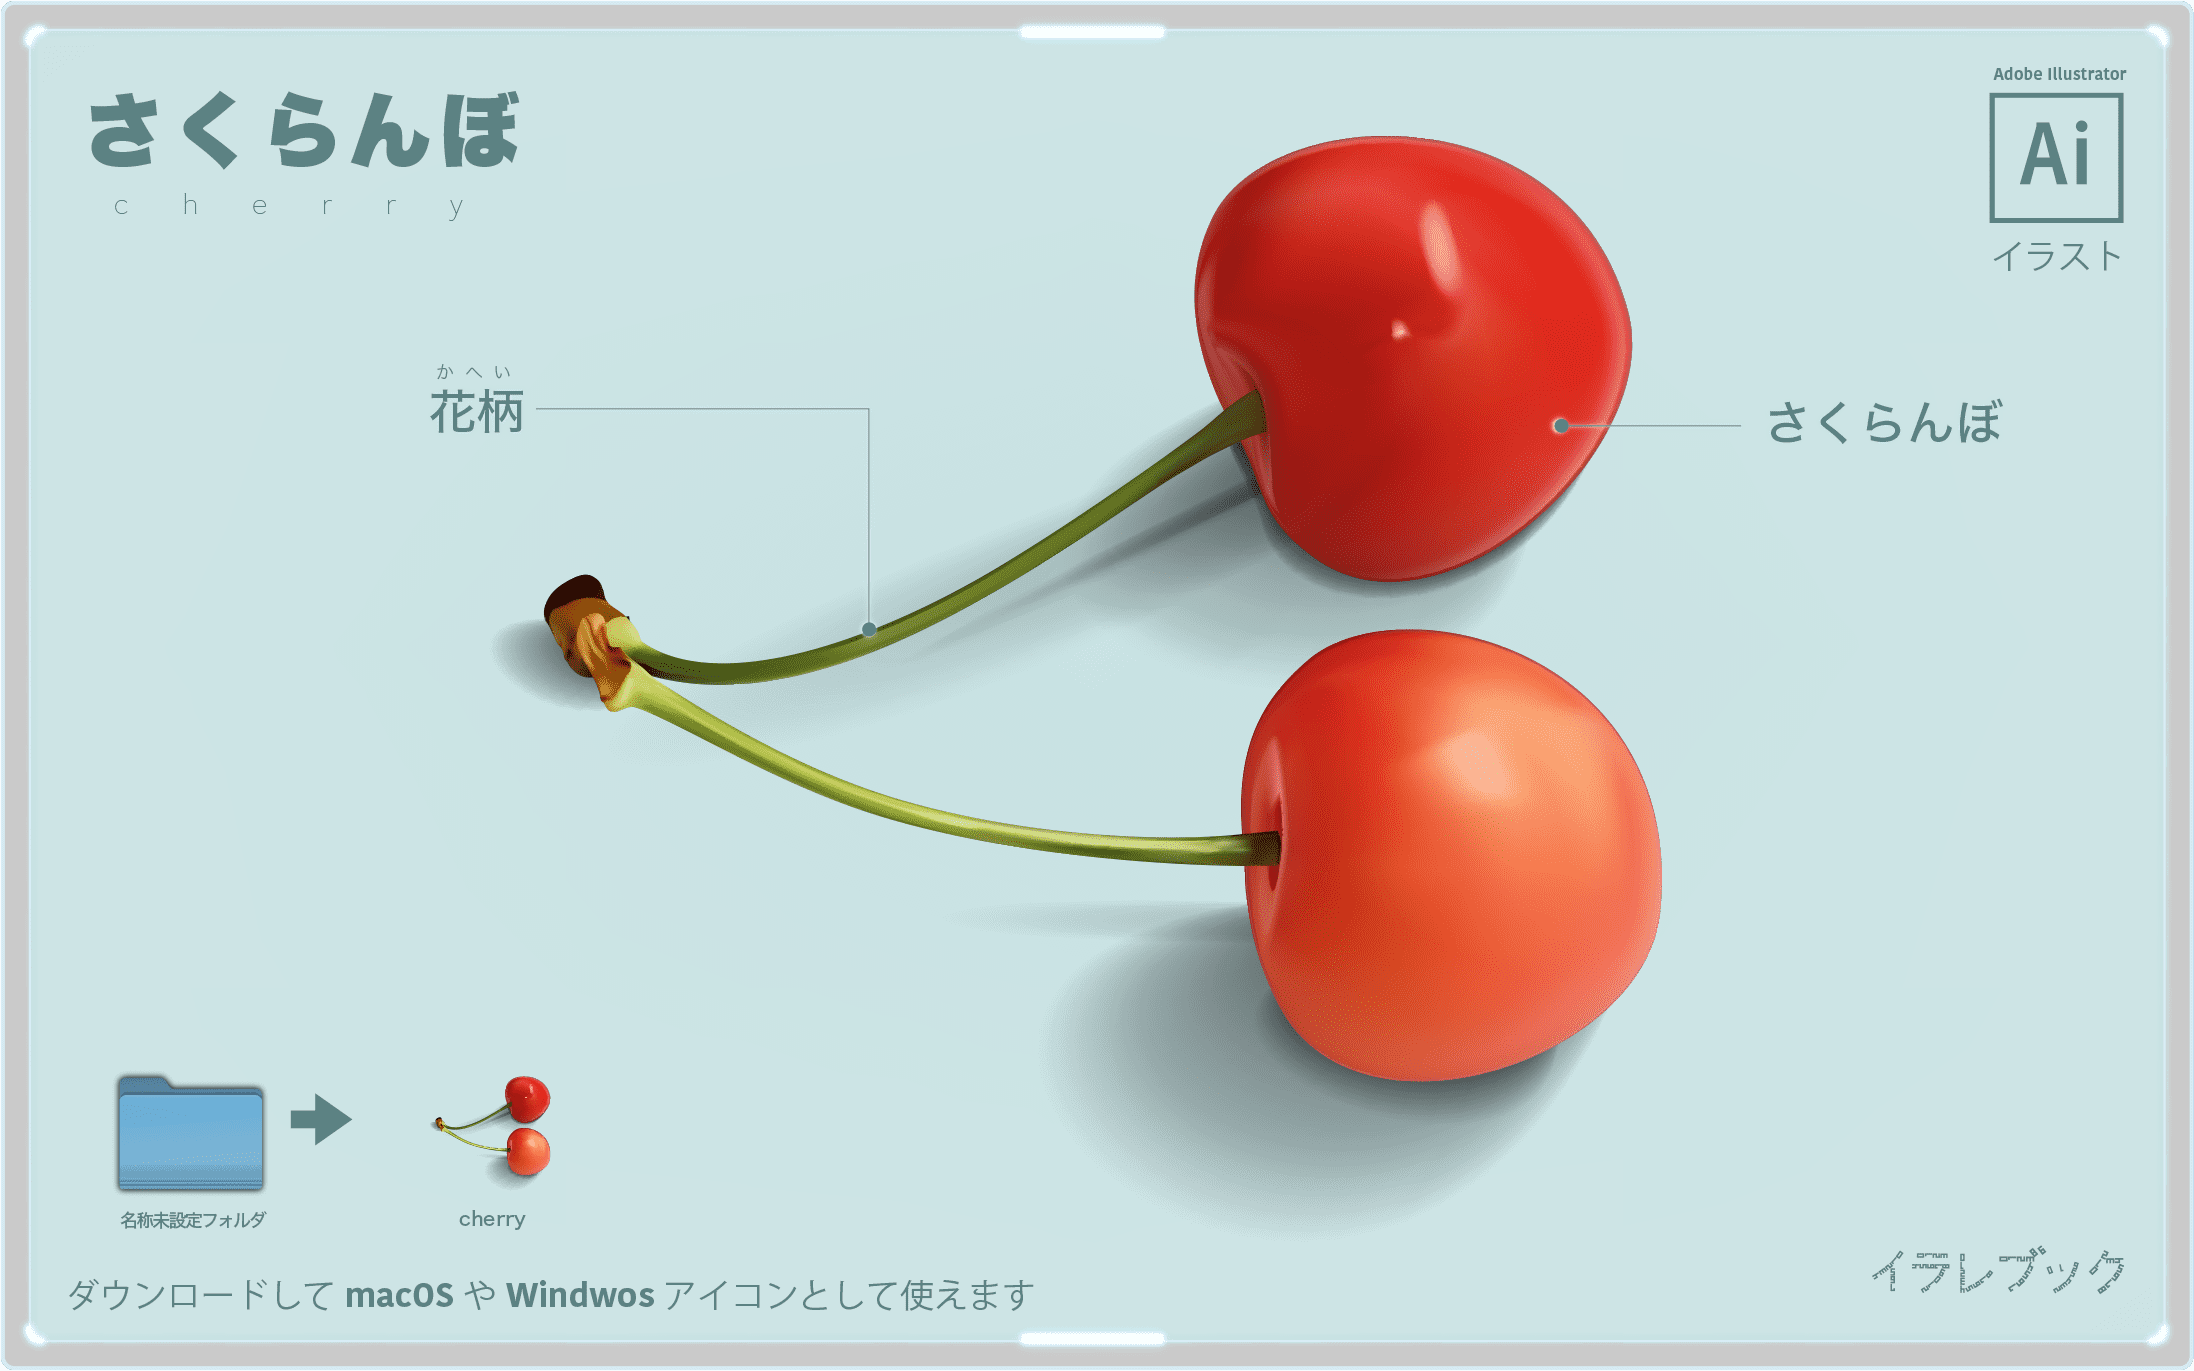 さくらんぼ最高品種の佐藤錦を食べよう 山形とトルコの意外な関係も Cherry